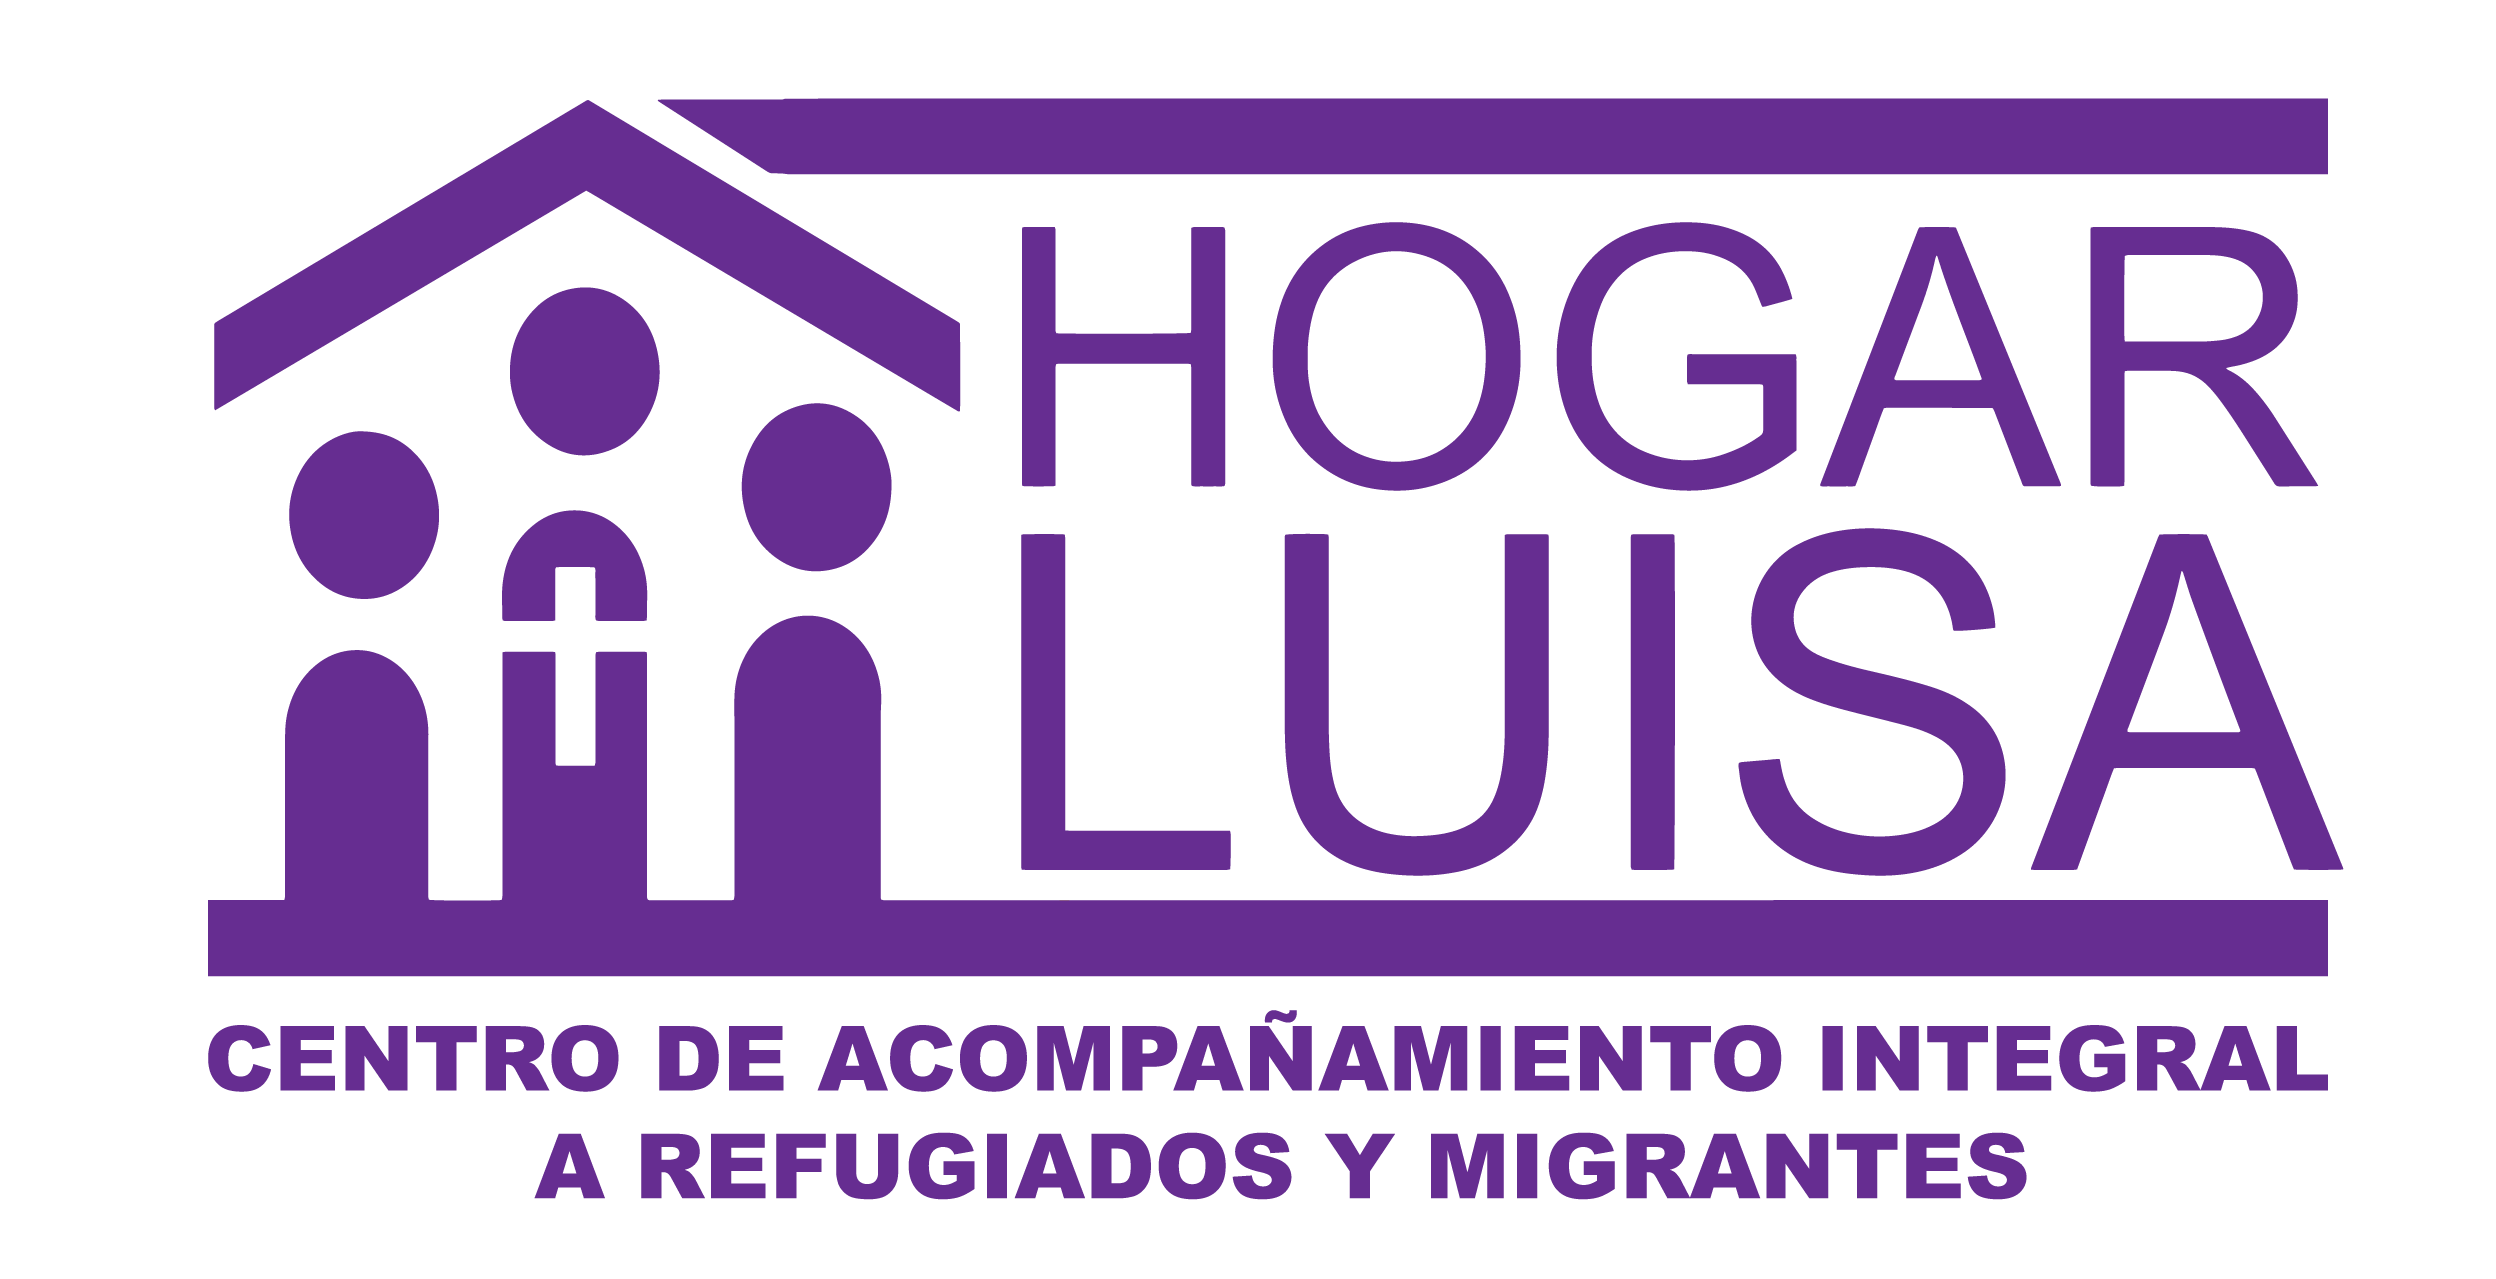 Centro de Acompañamiento Integral a Refugiados y Migrantes